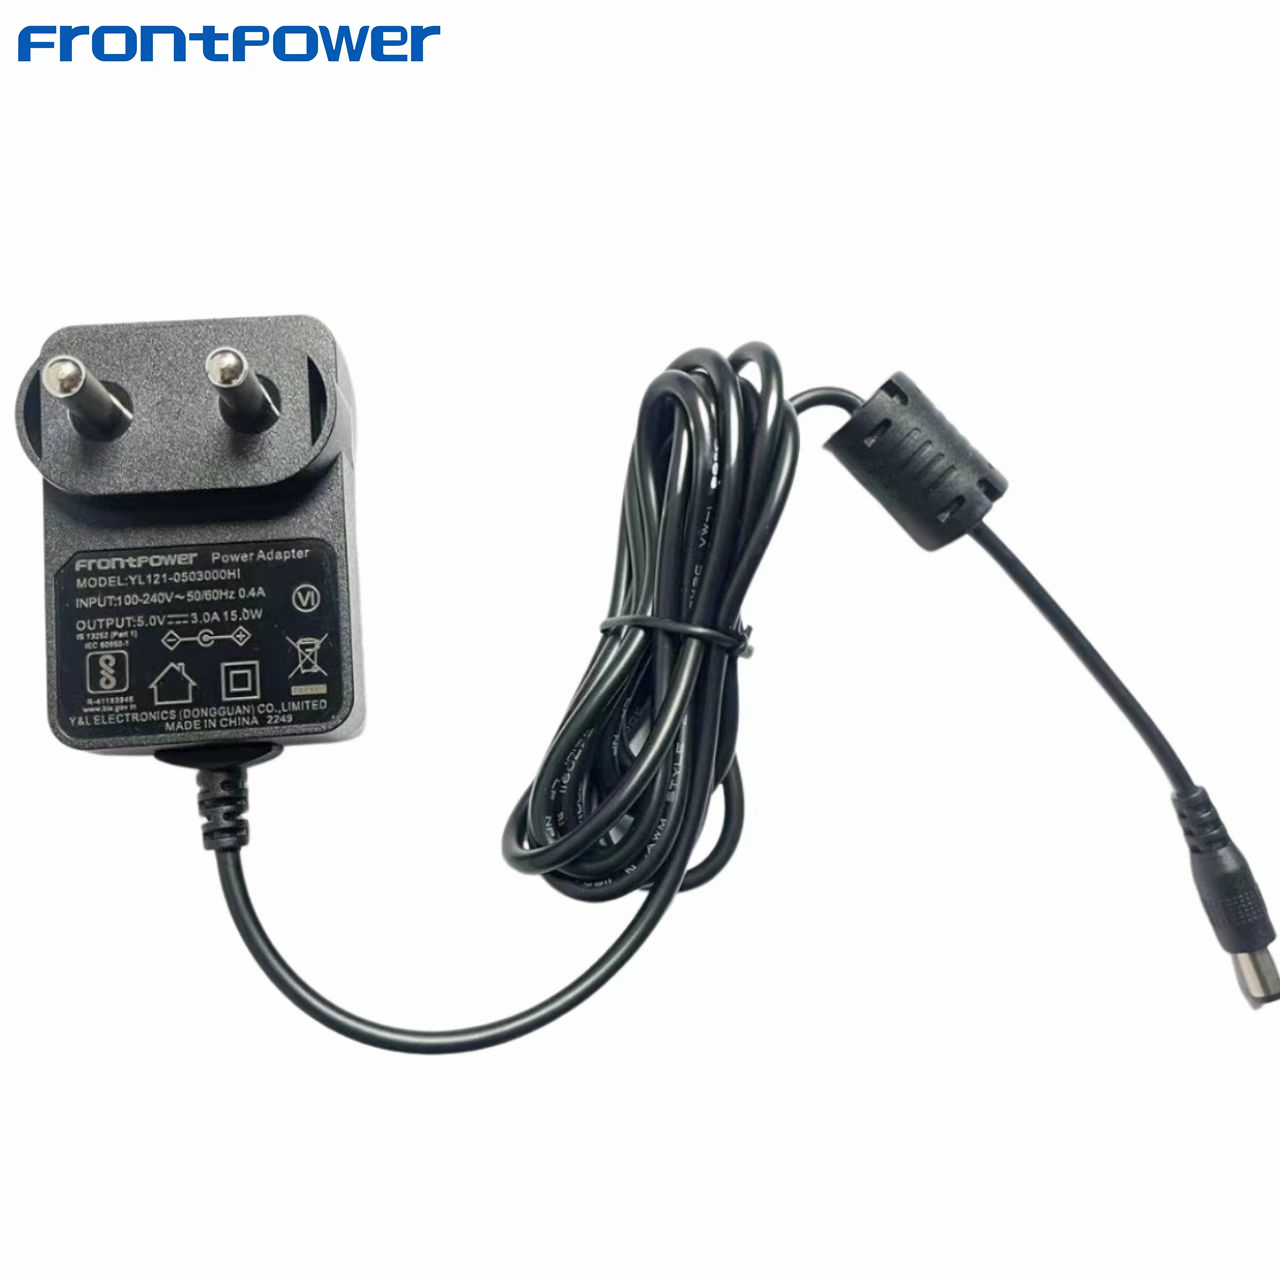 wall mount BIS charger 5v Indian plug oem odm adaptor 5v 1a 5v2a 5v2.5a 5v 3a power charger for robot game